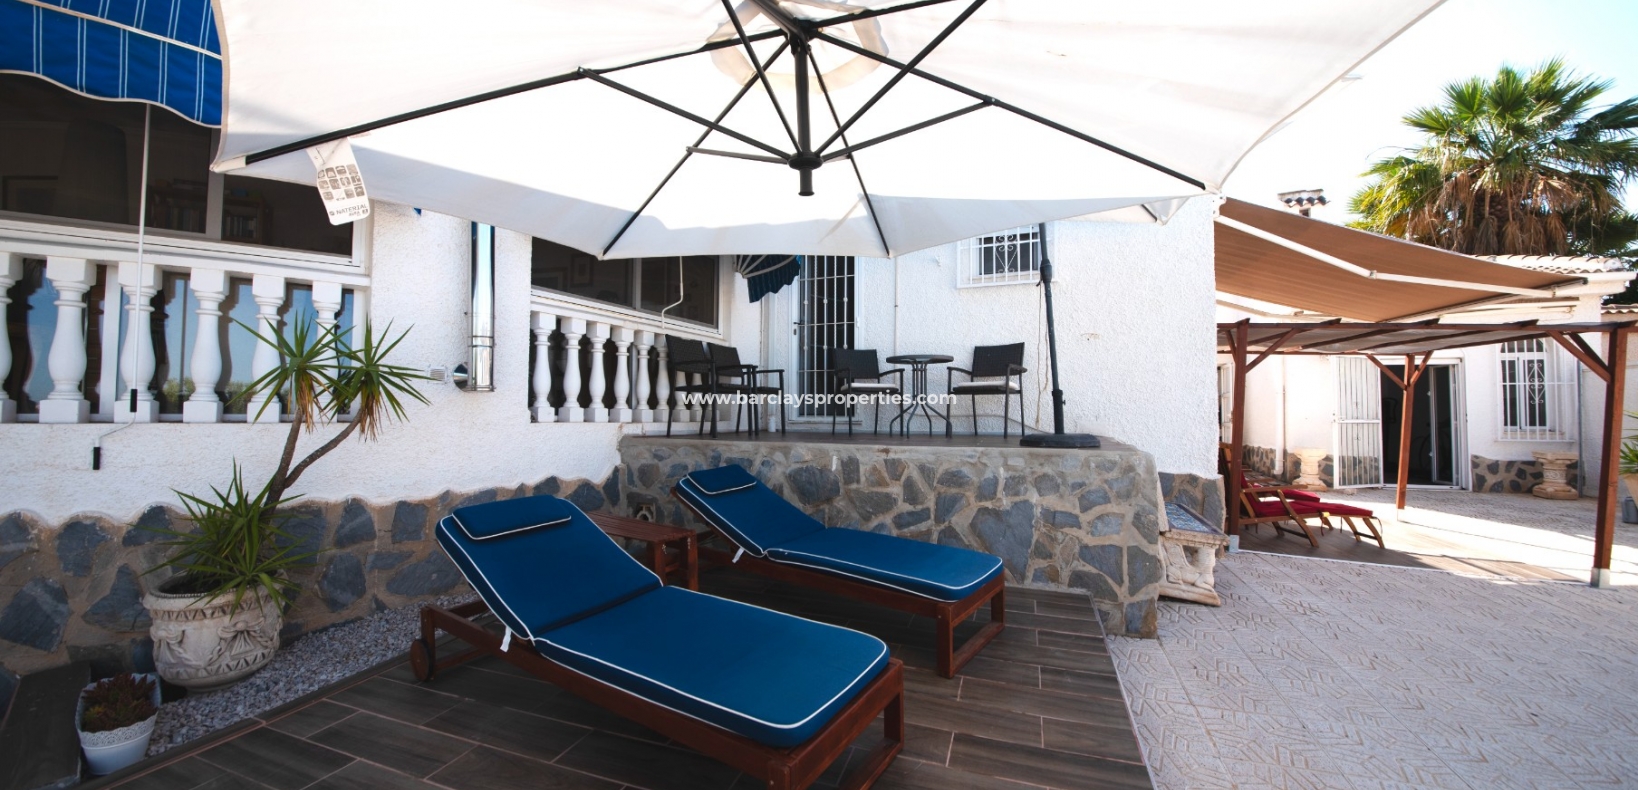 Tuin - Prestige Villa te koop in urbanisatie La Escuera, Alicante